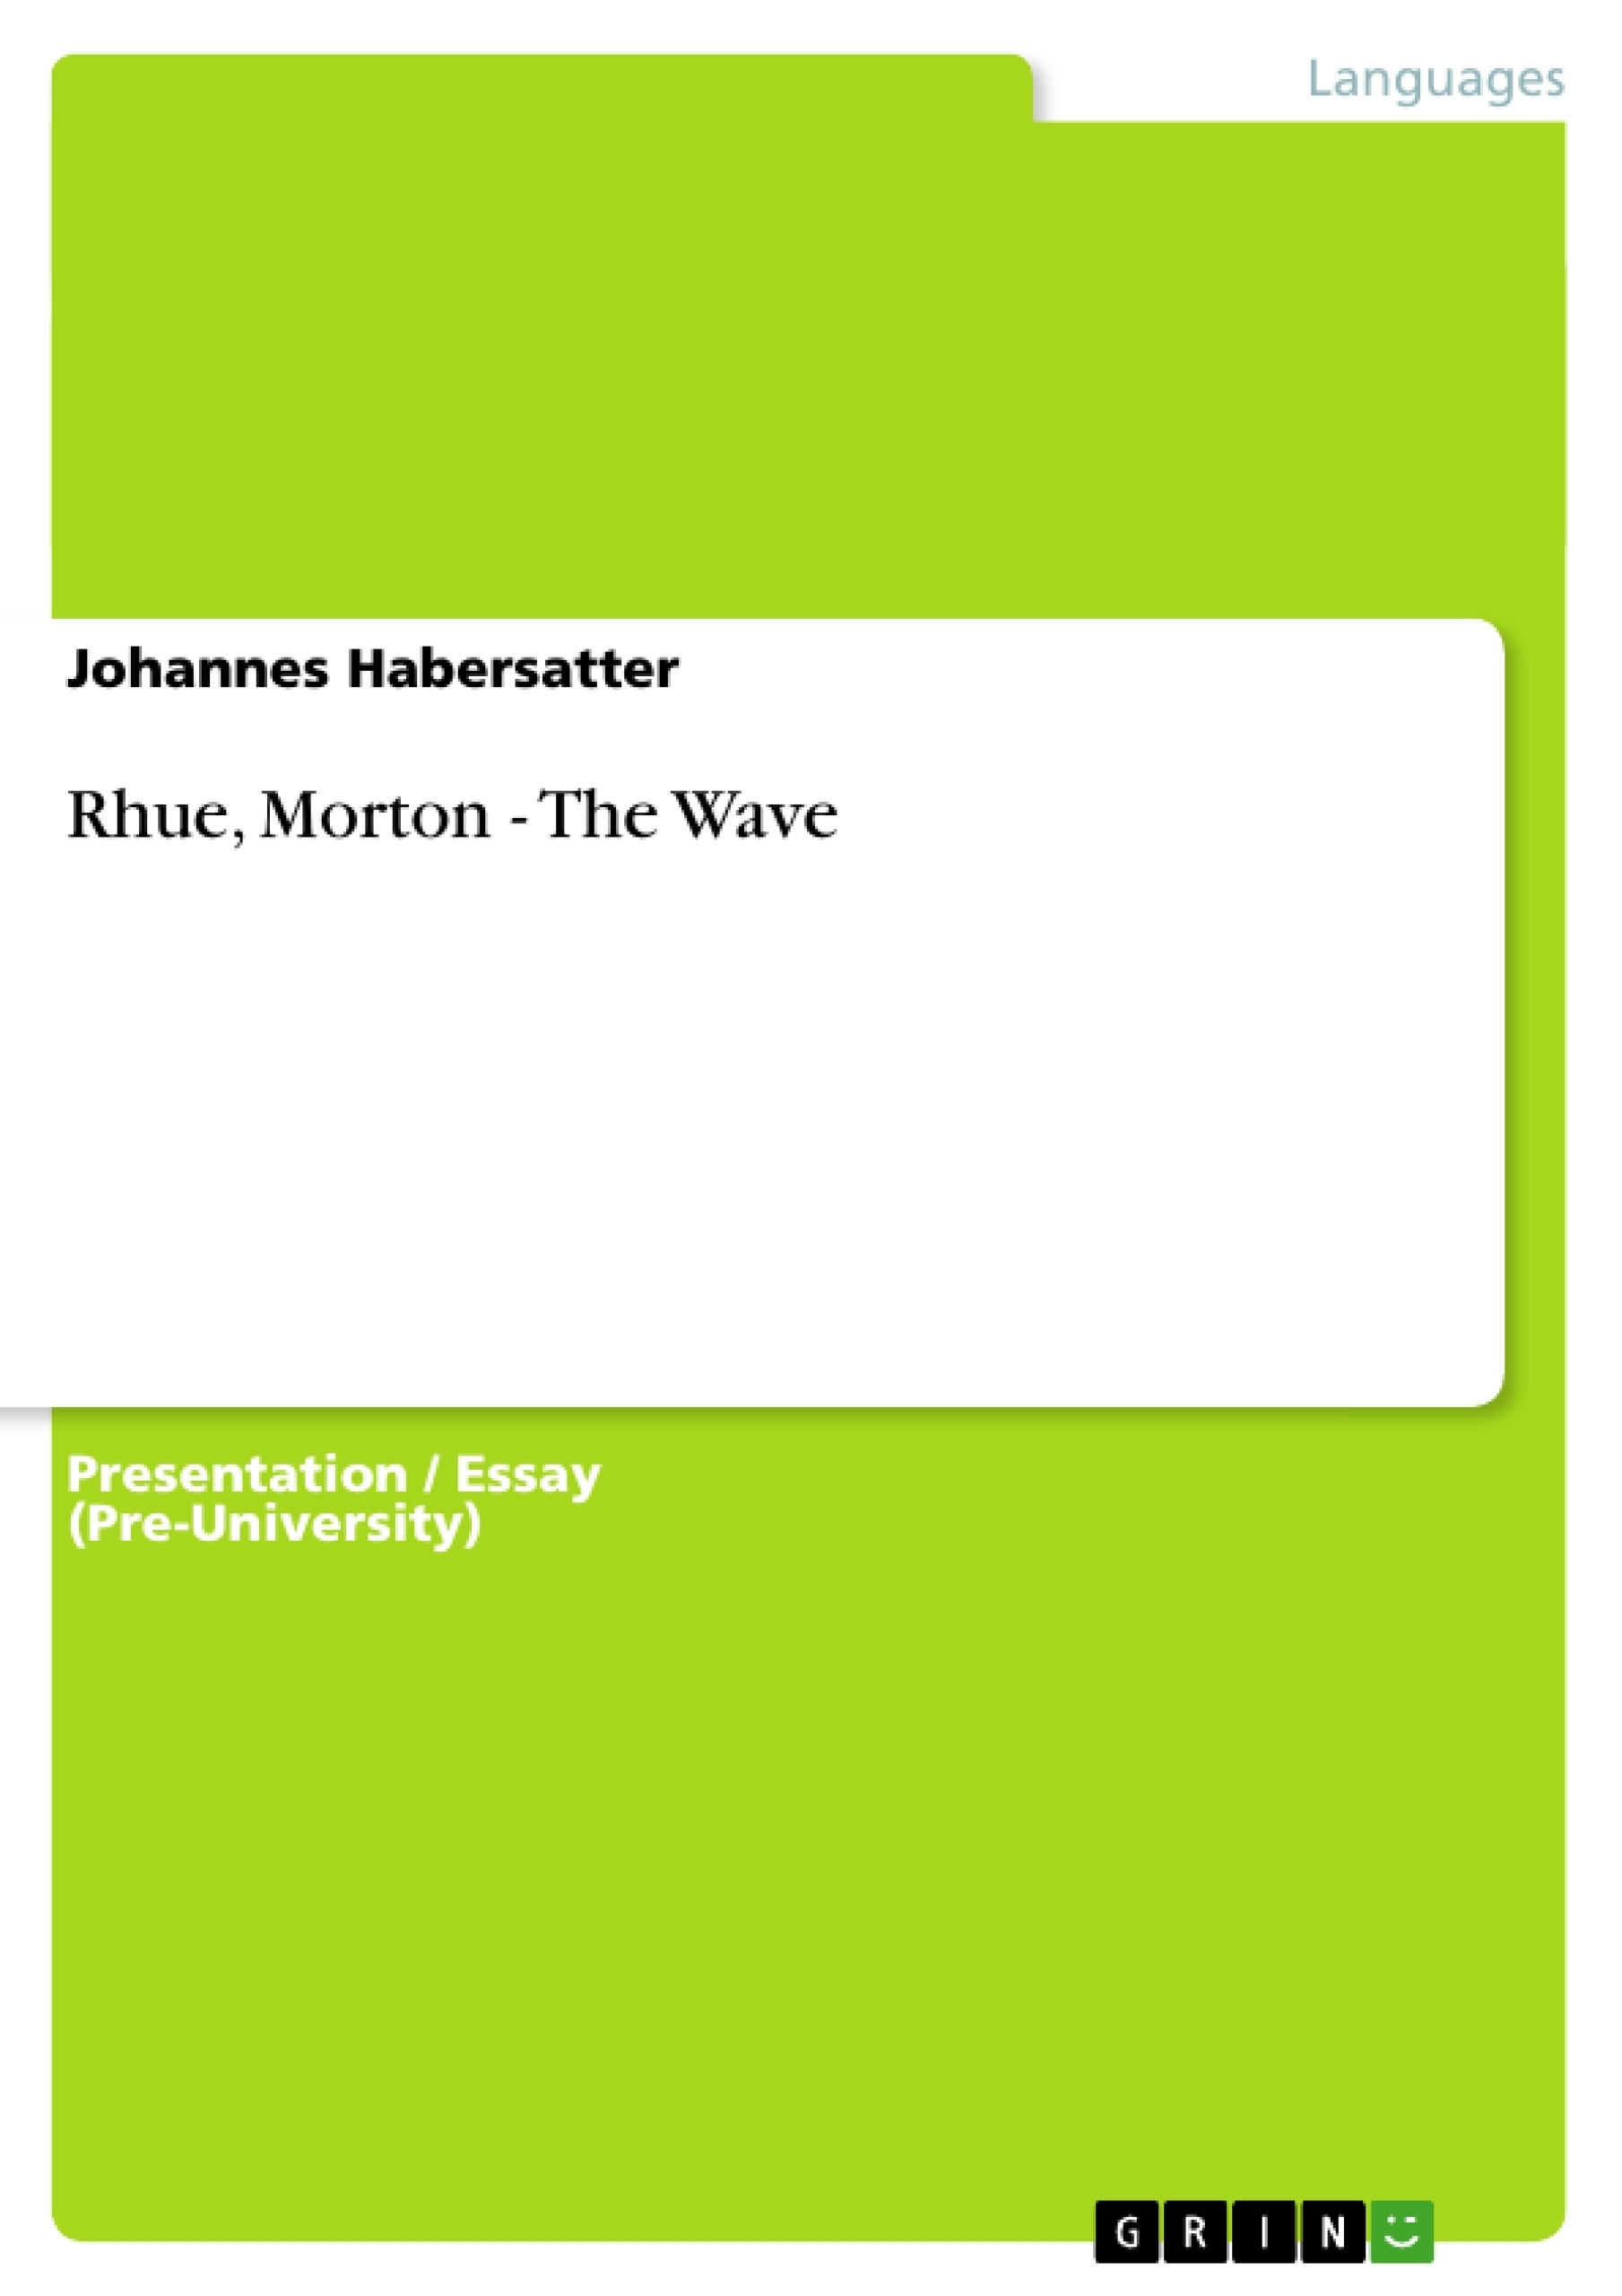 The wave morton rhue essay